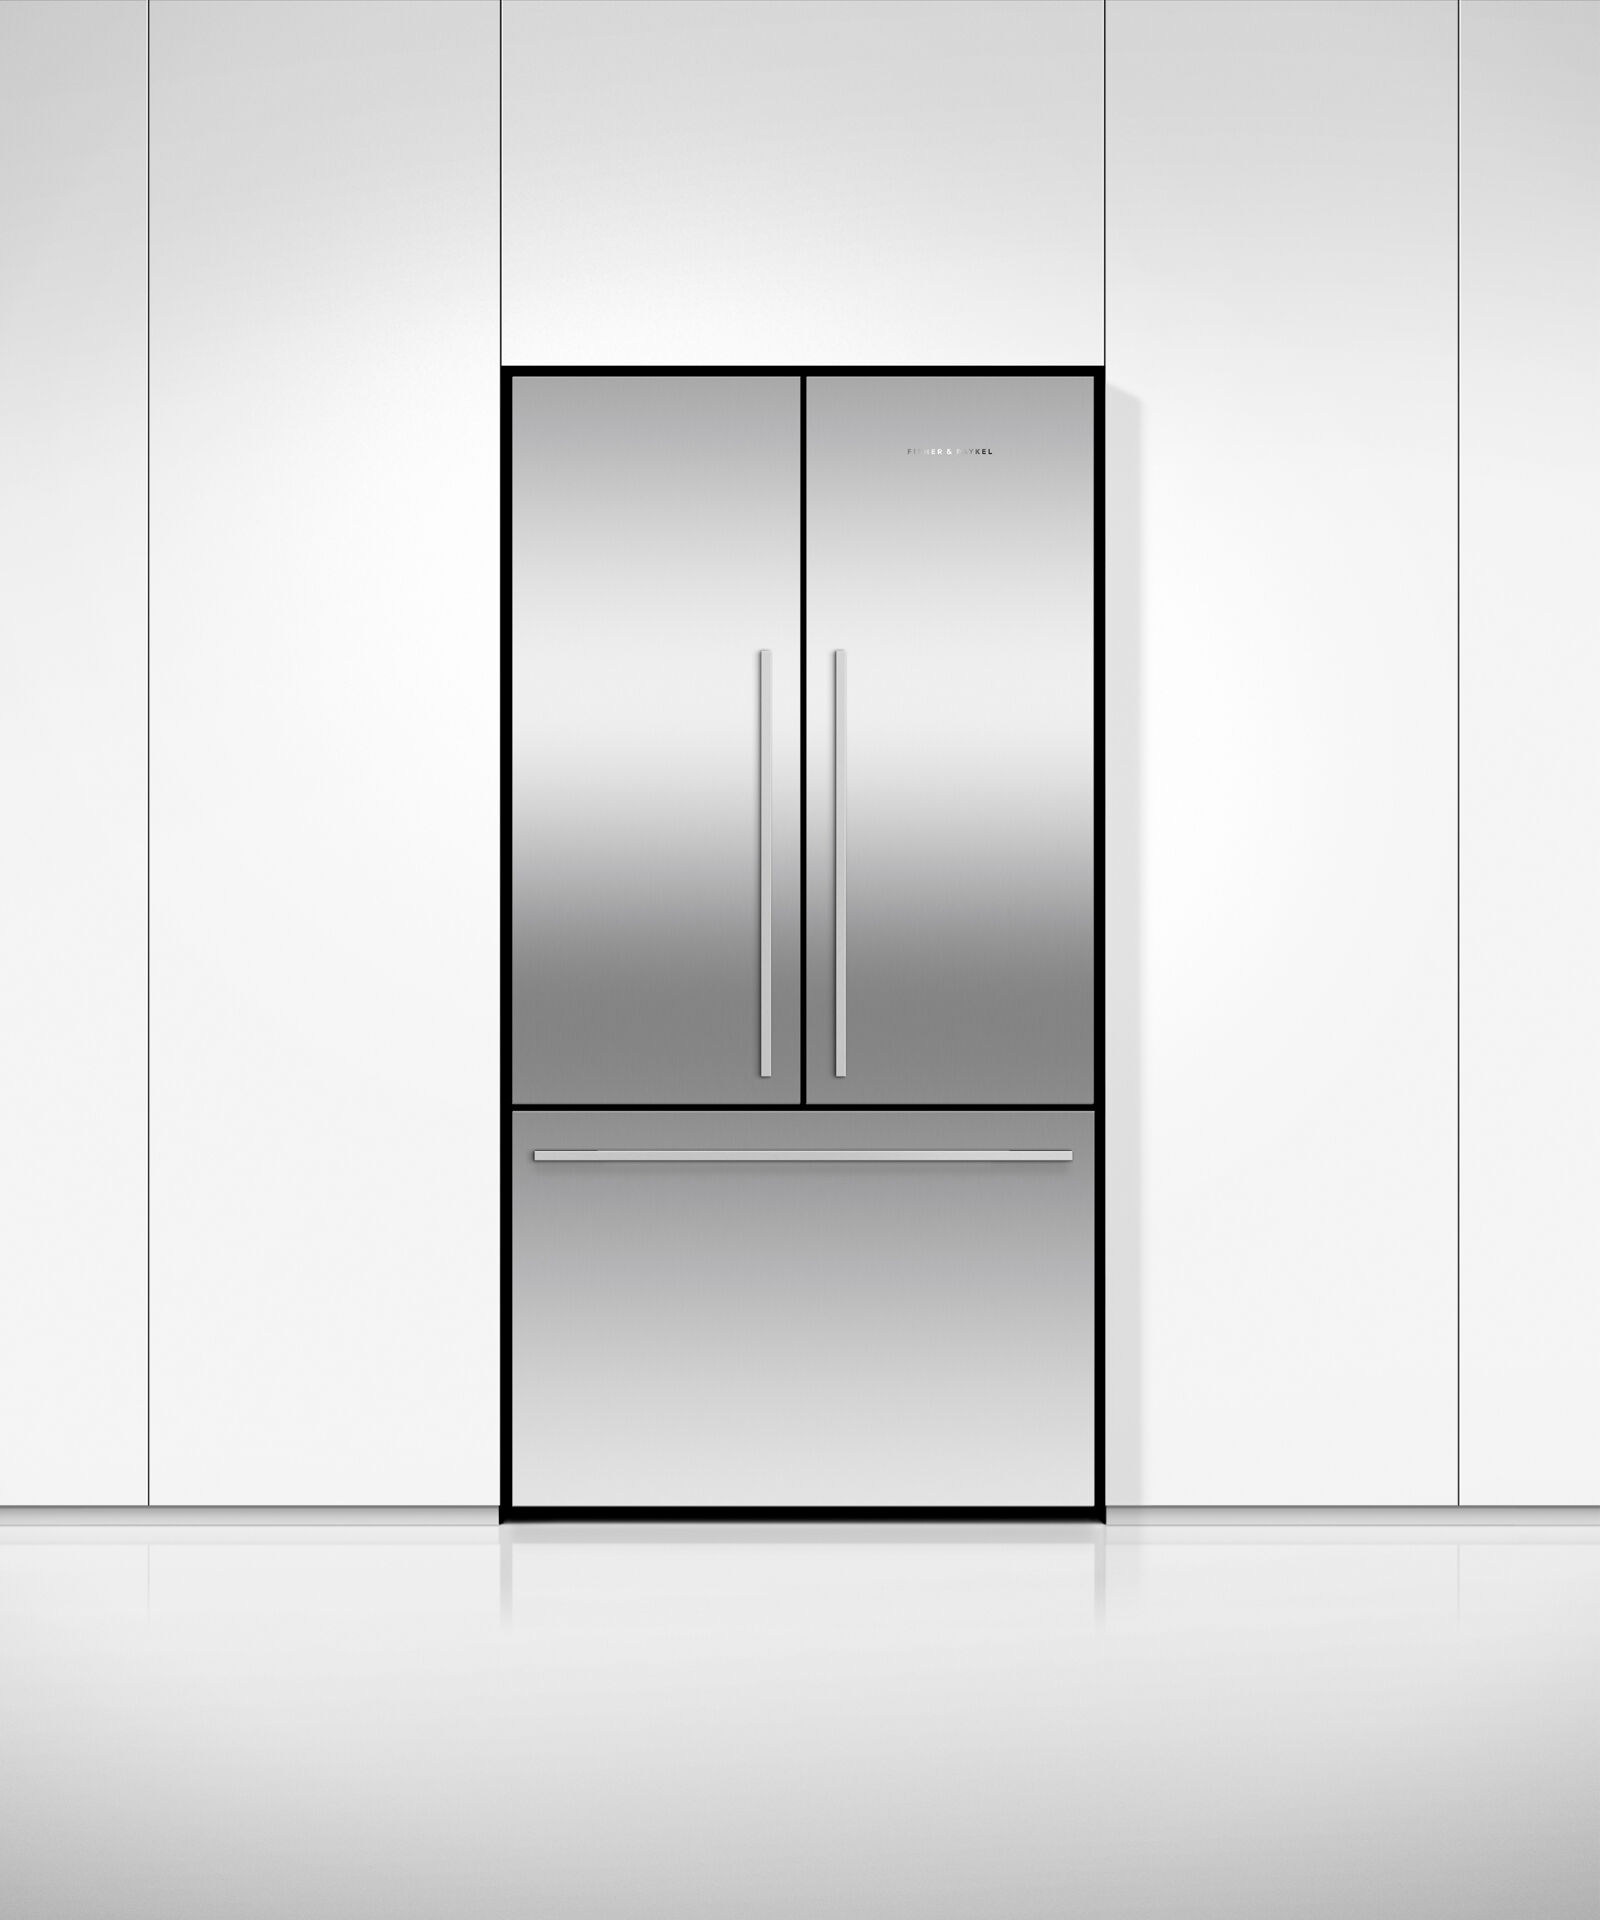 Freestanding French Door Refrigerator Freezer, 90cm gallery image 3.0